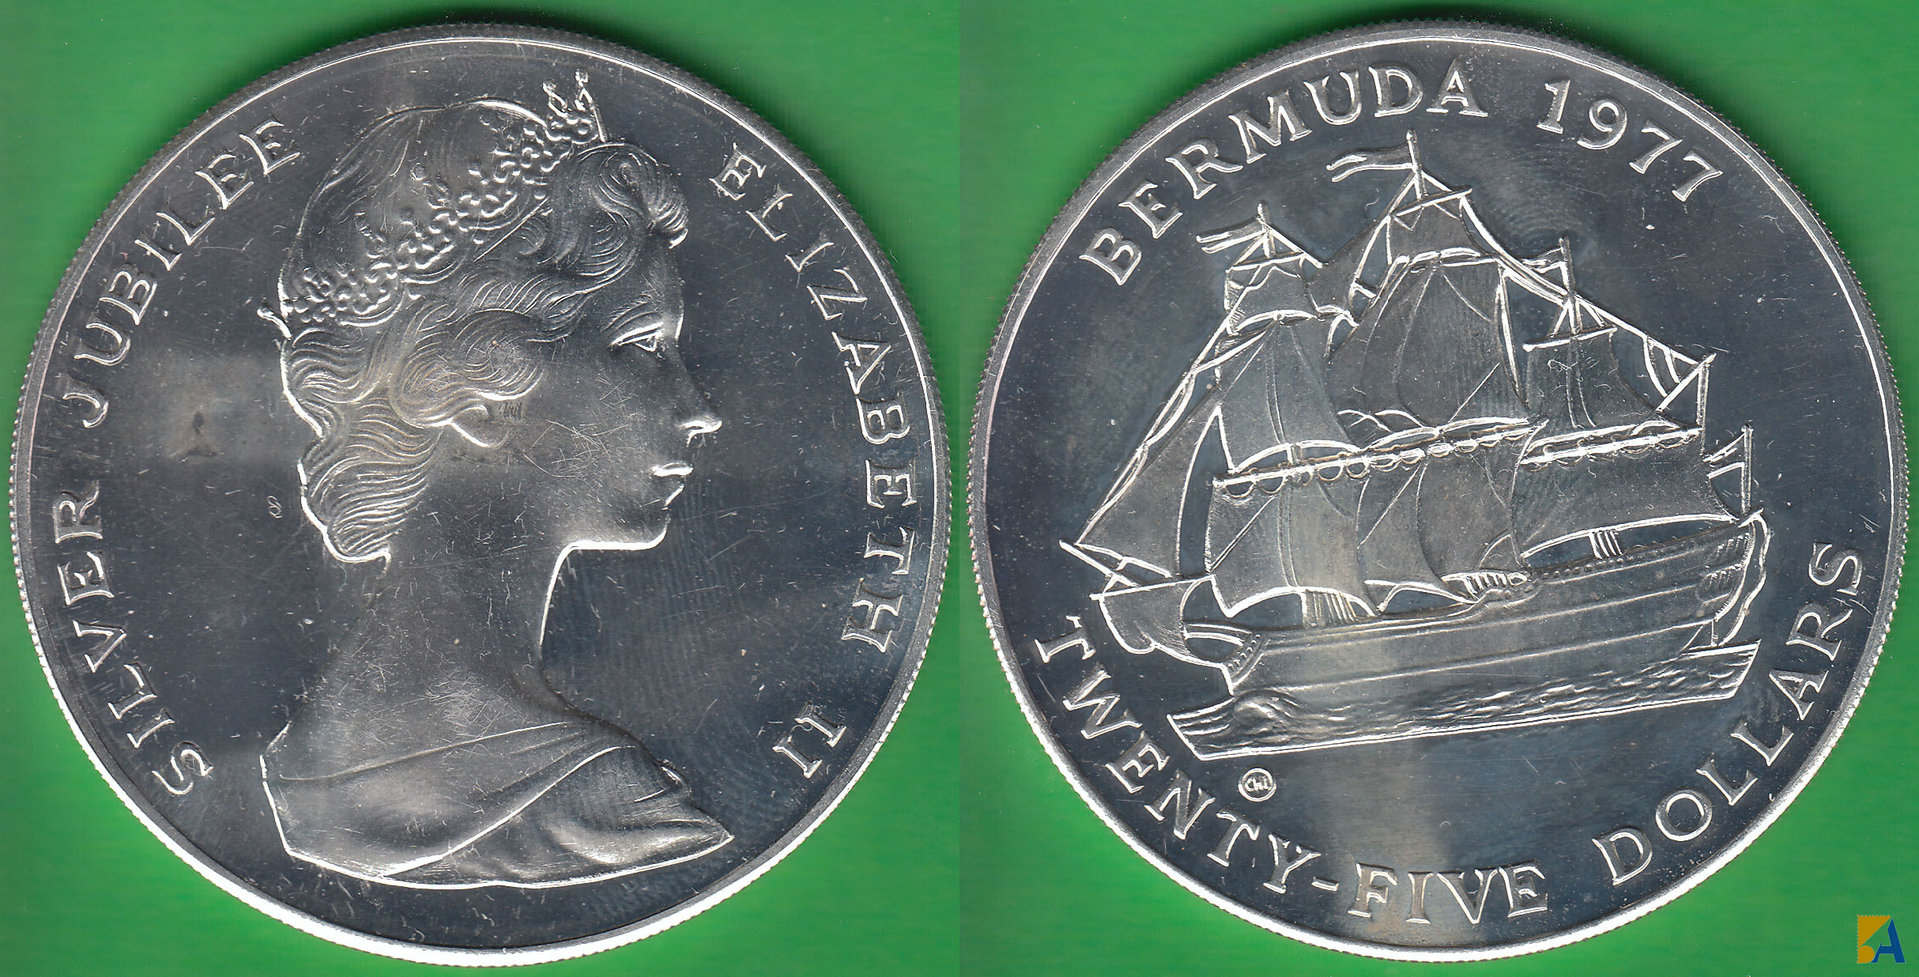 BERMUDAS - BERMUDA. 25 DOLARES (DOLLARS) DE 1977 CHI. PLATA 0.925.